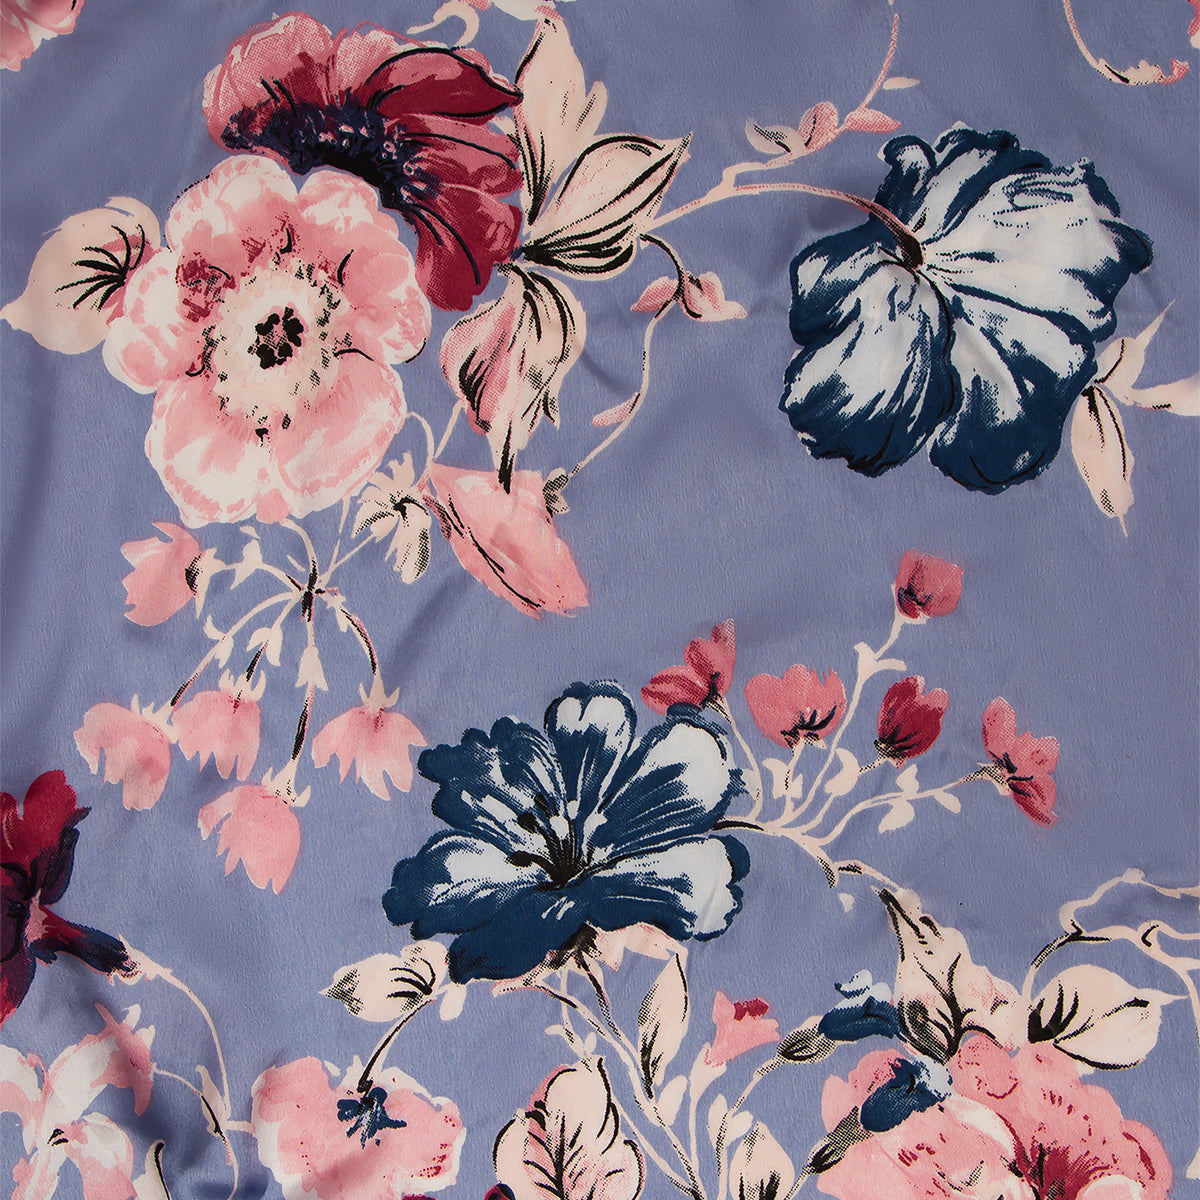 Lavendar Floral Printed Satin Slip On Cover Up